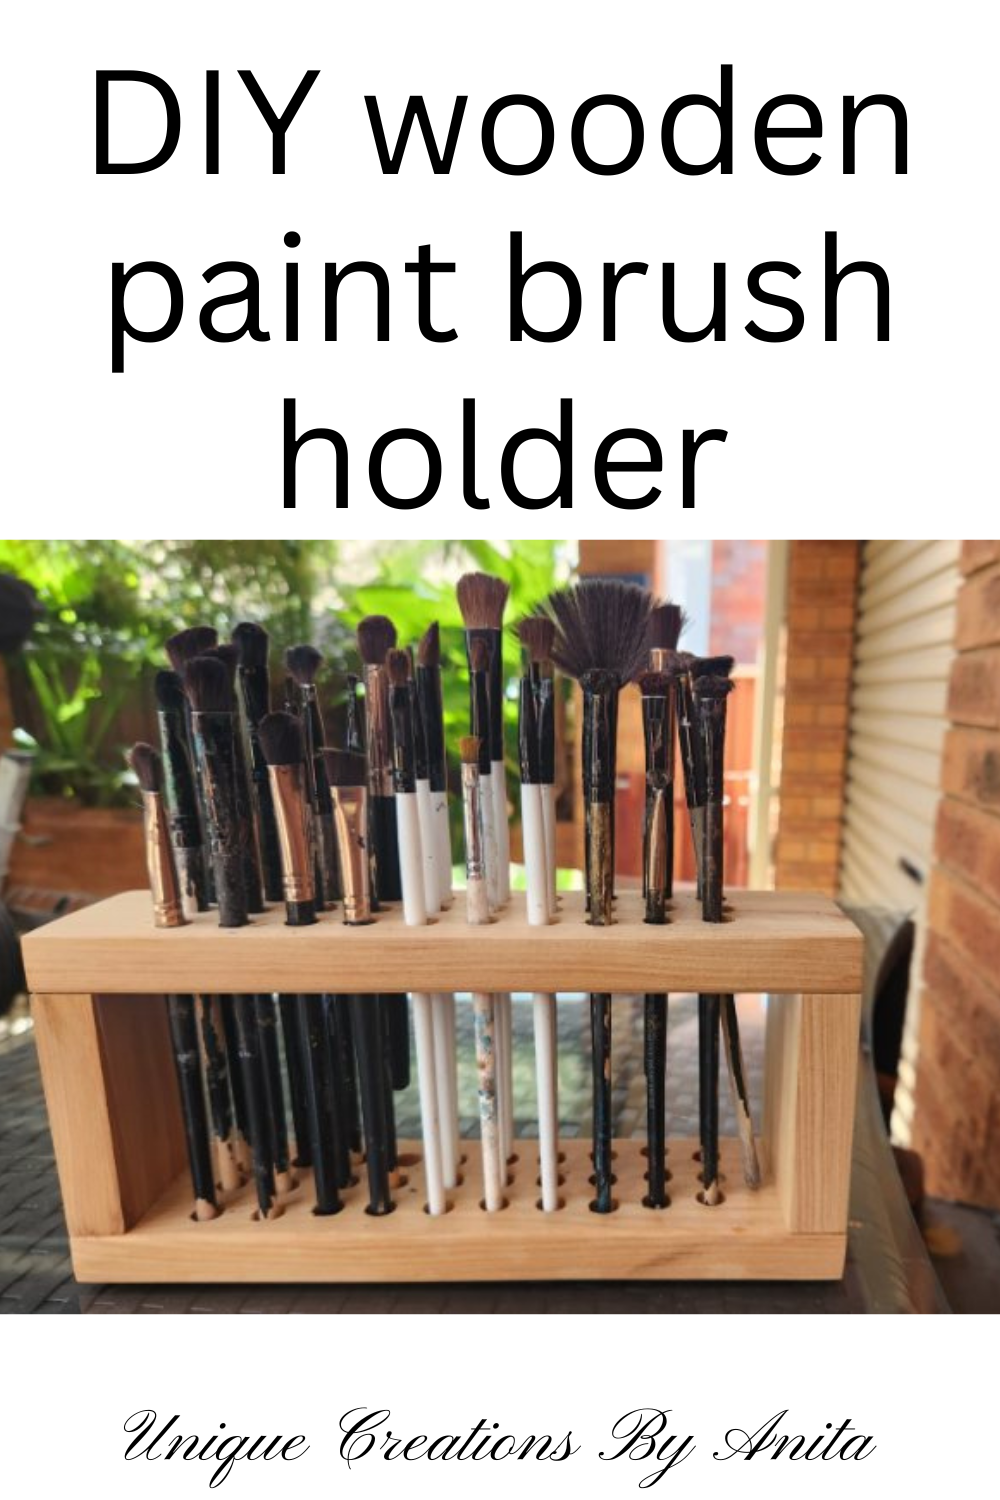 Painting Brush Holder With 4 Slots, Diy Art Brush Rest Holder